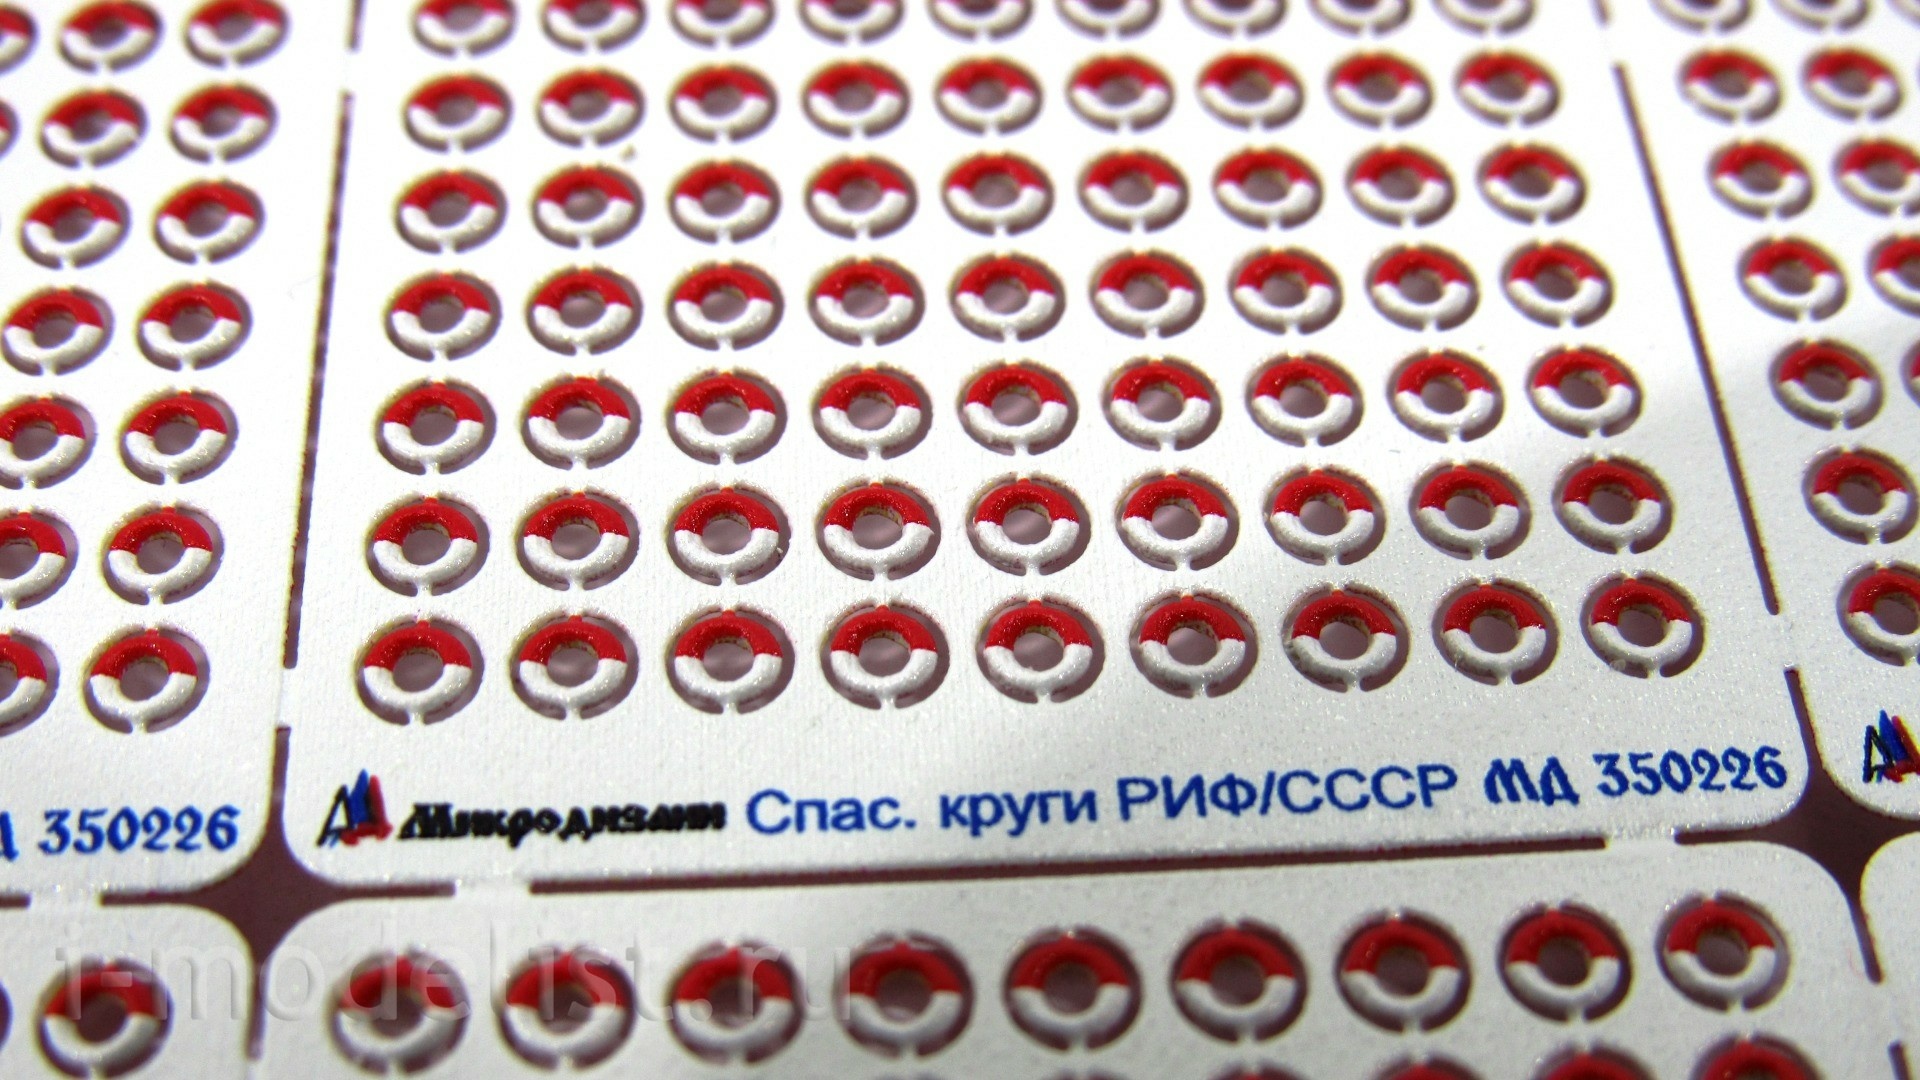 350226 Микродизайн 1/350 Круги спасательные (РИФ, СССР) цветные